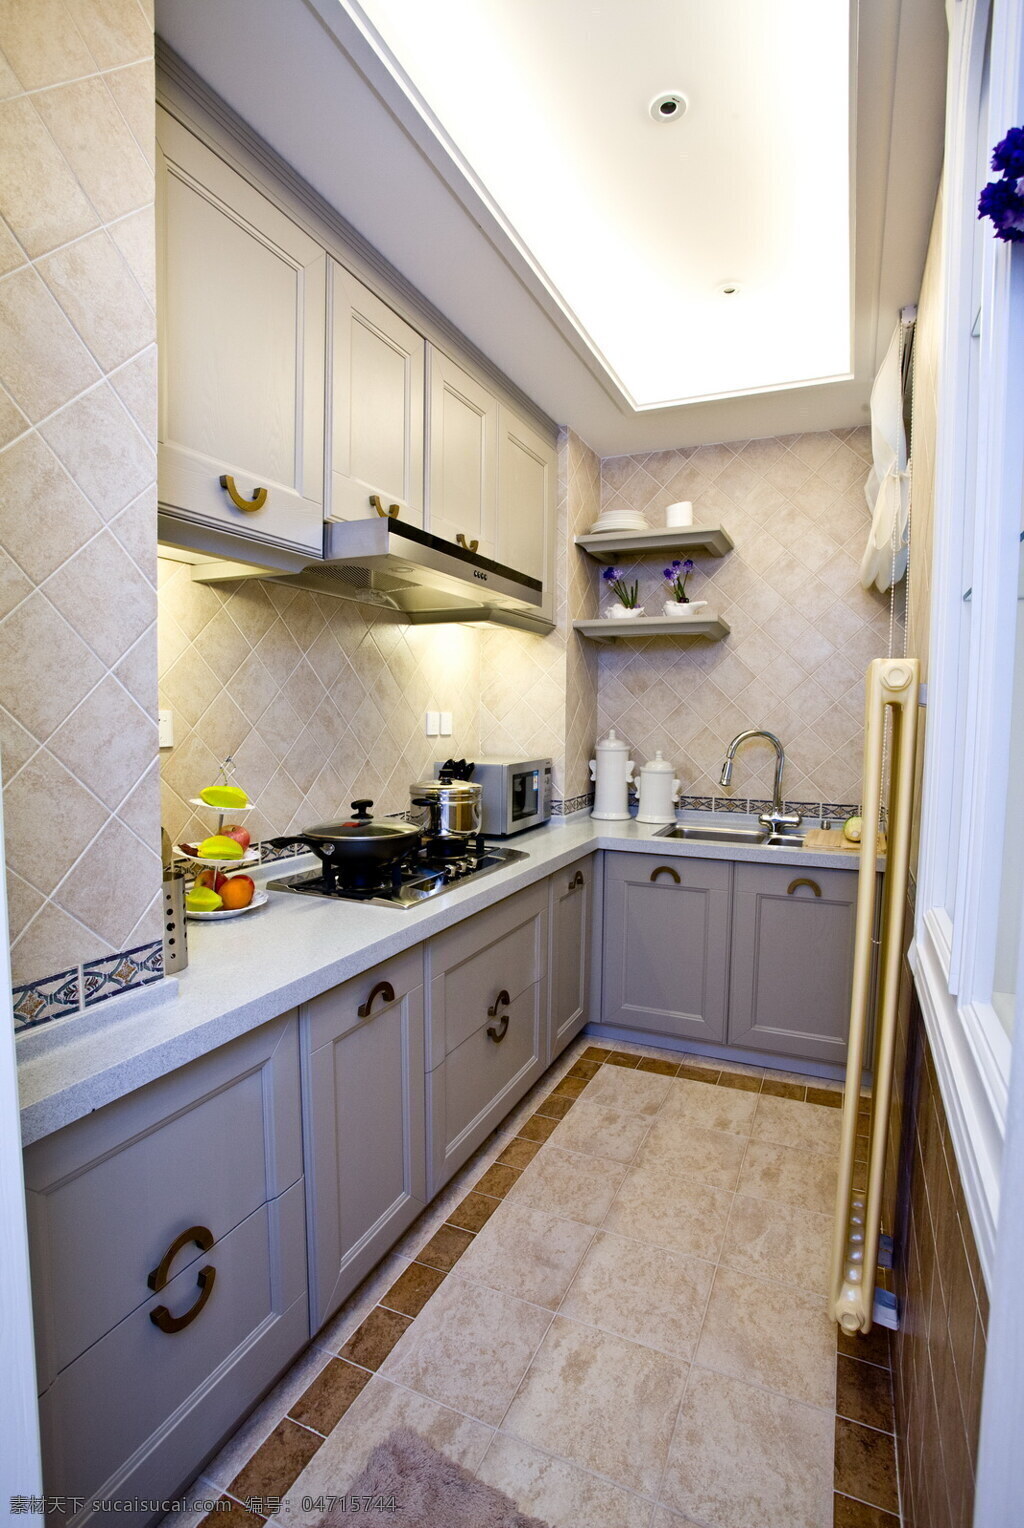 简约 风 室内设计 厨房 收纳柜 效果图 现代 料理台 白色 调 灶台 壁柜 家装